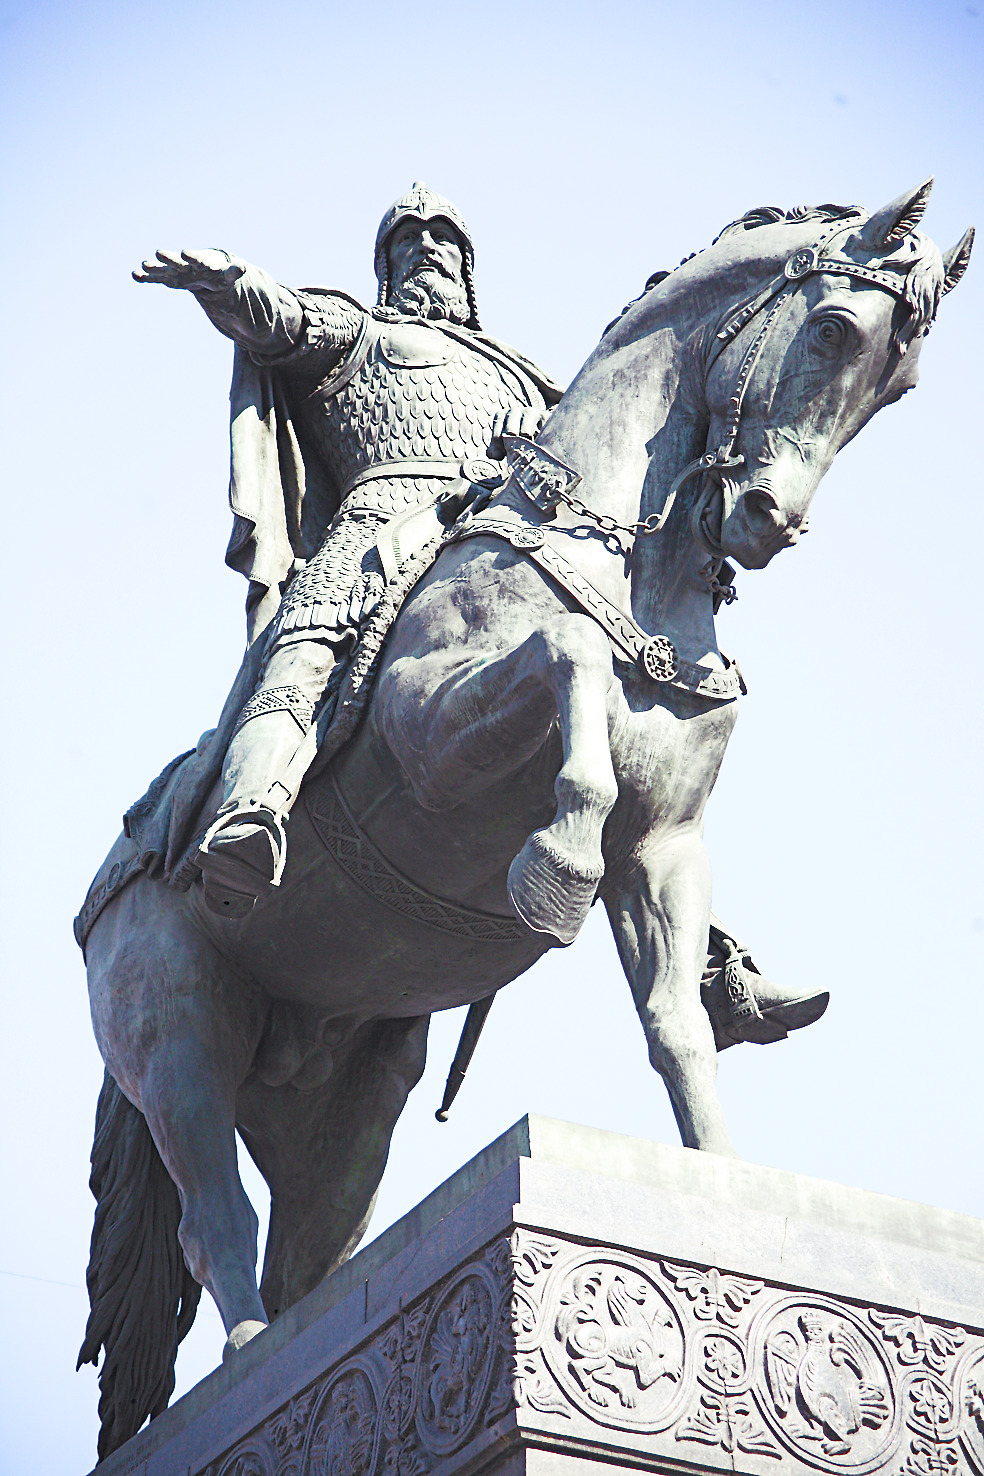 Памятник Юрию Долгорукому в Москве